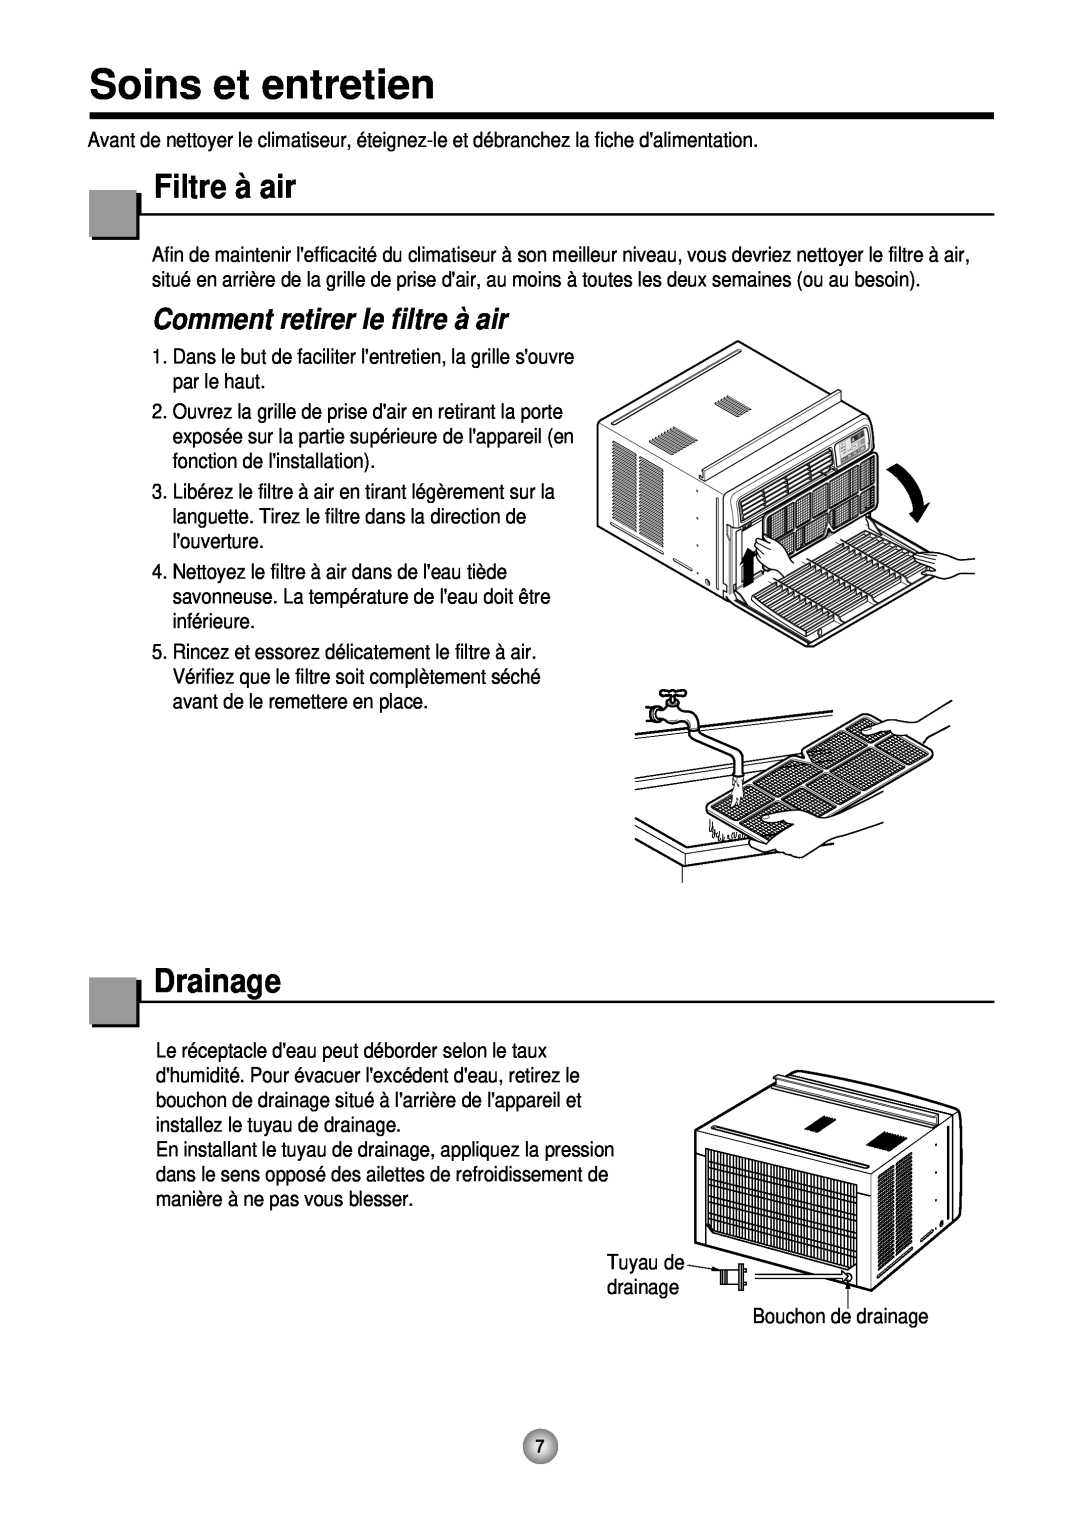 Friedrich CP12, CP10 operation manual Soins et entretien, Filtre à air, Comment retirer le filtre à air, Drainage 